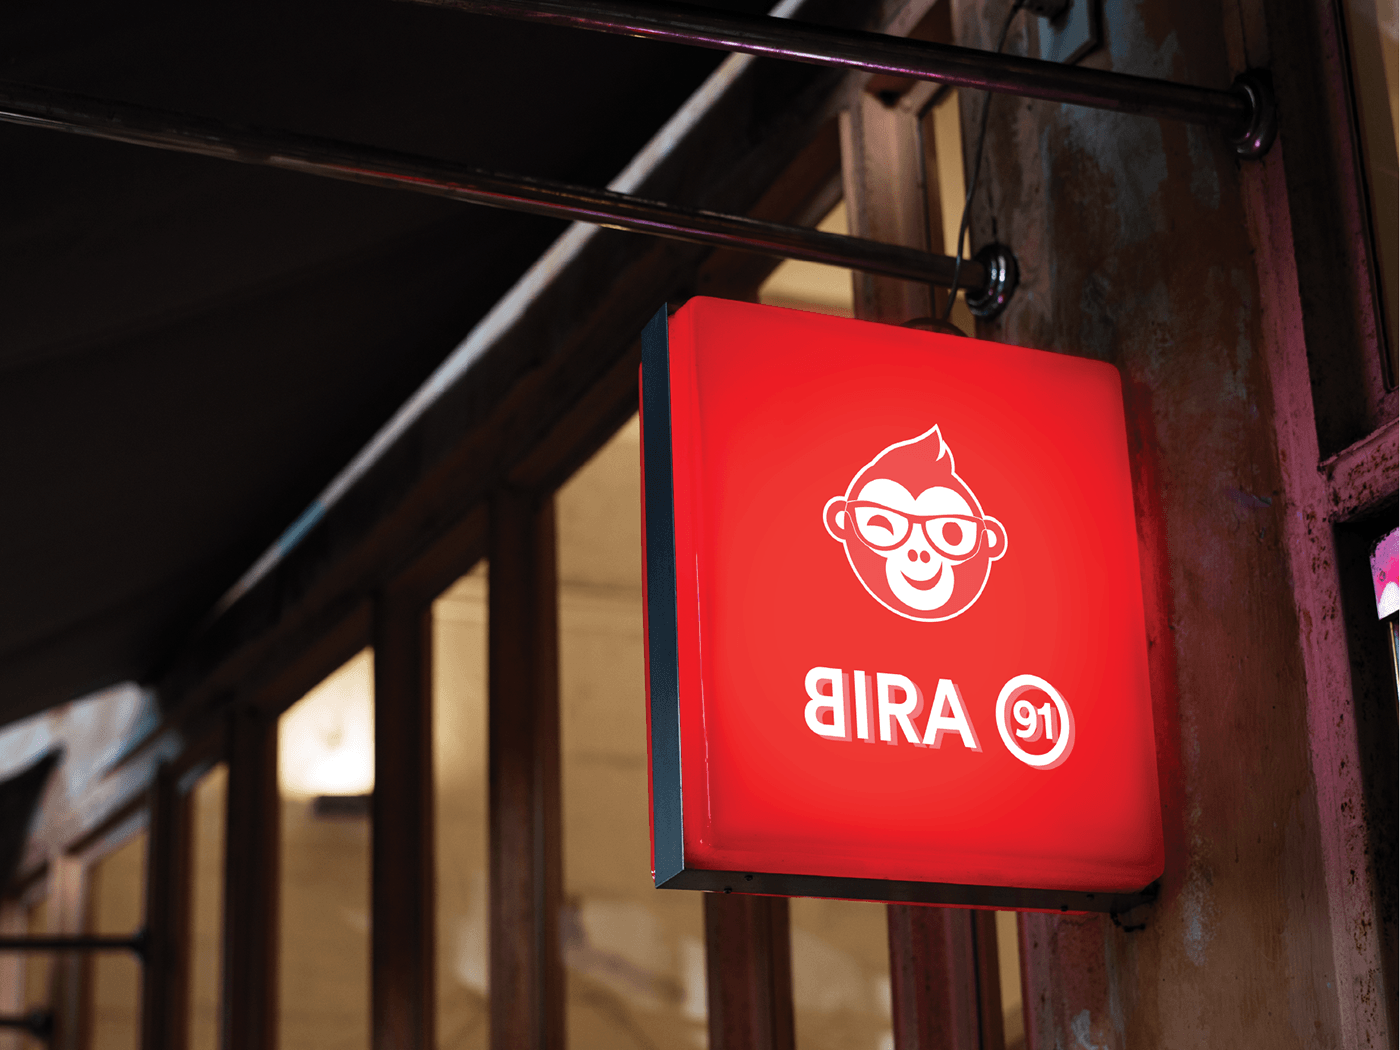 bira beer BIRA91 rebranding rendering branding  mesh